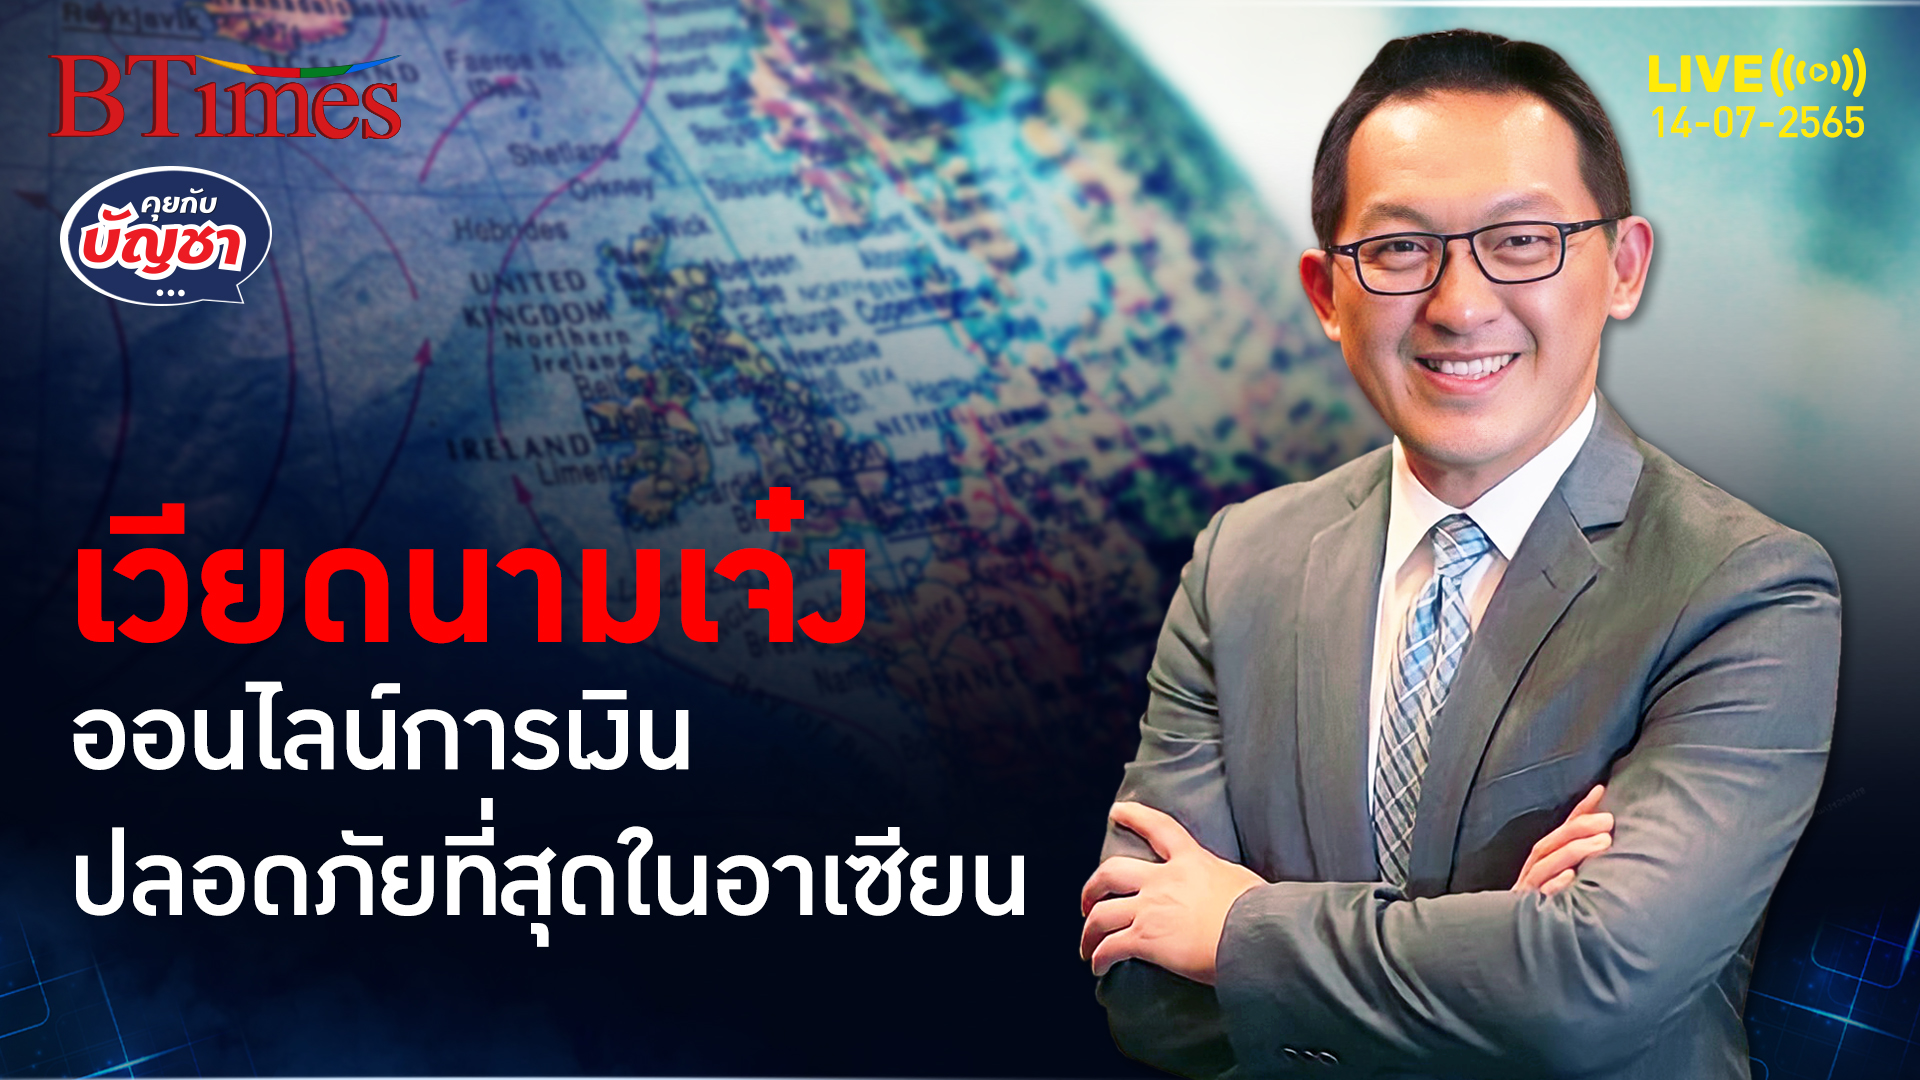 ทำไมไทยรั้งรองบ้วยระบบธนาคารออนไลน์ปลอดภัยที่สุดในอาเซียนเมื่อเทียบกับเวียดนาม | คุยกับบัญชา l 14 กรกฎาคม 2565